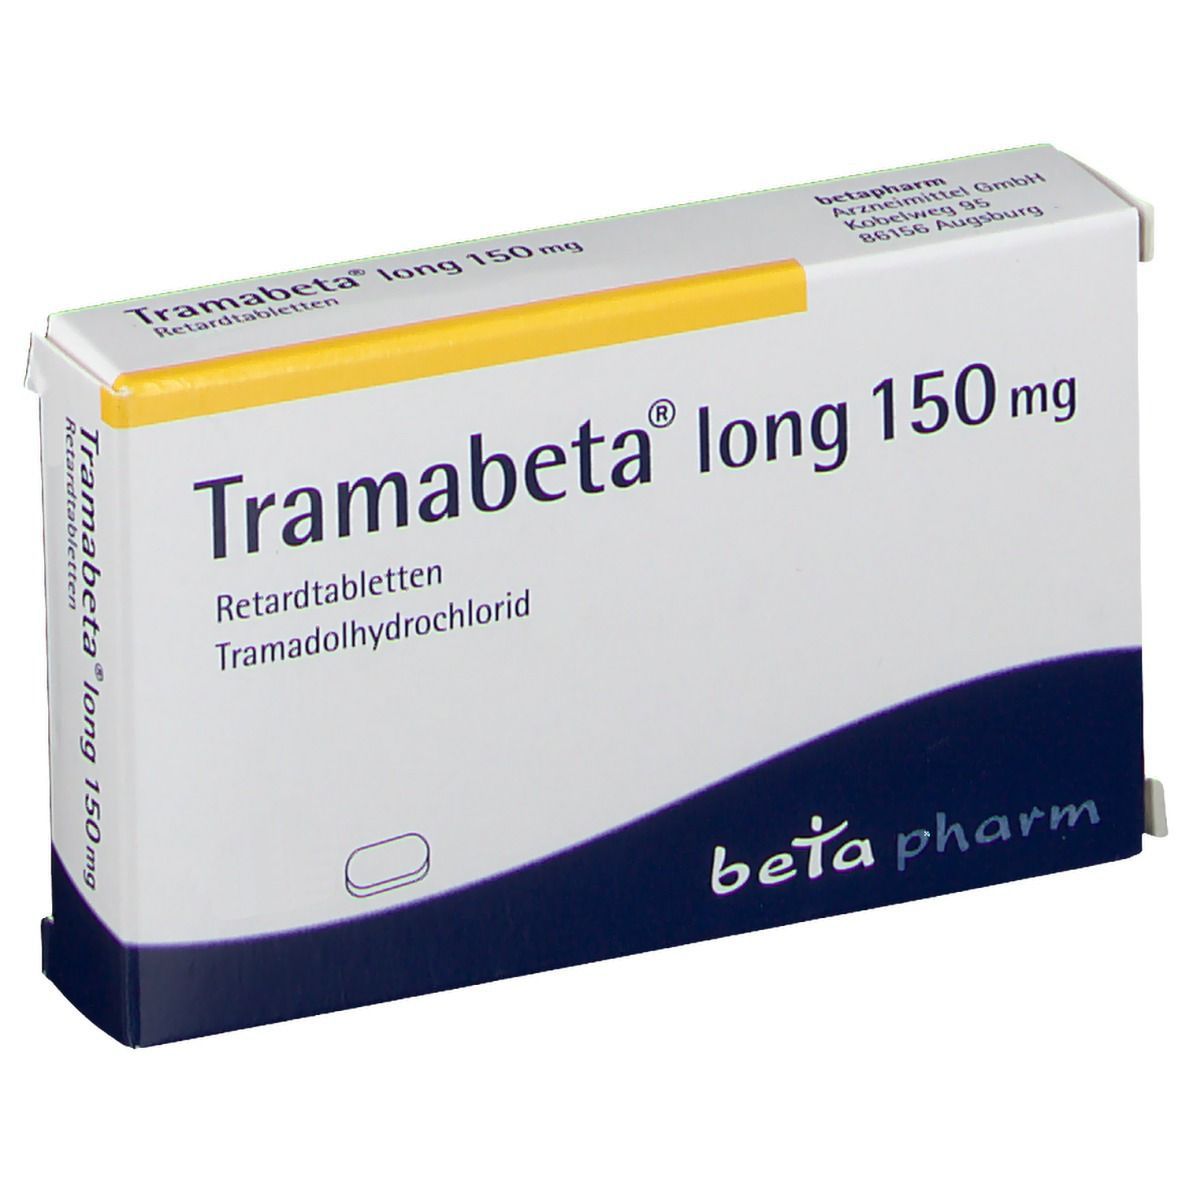 Tramabeta® long 150 mg